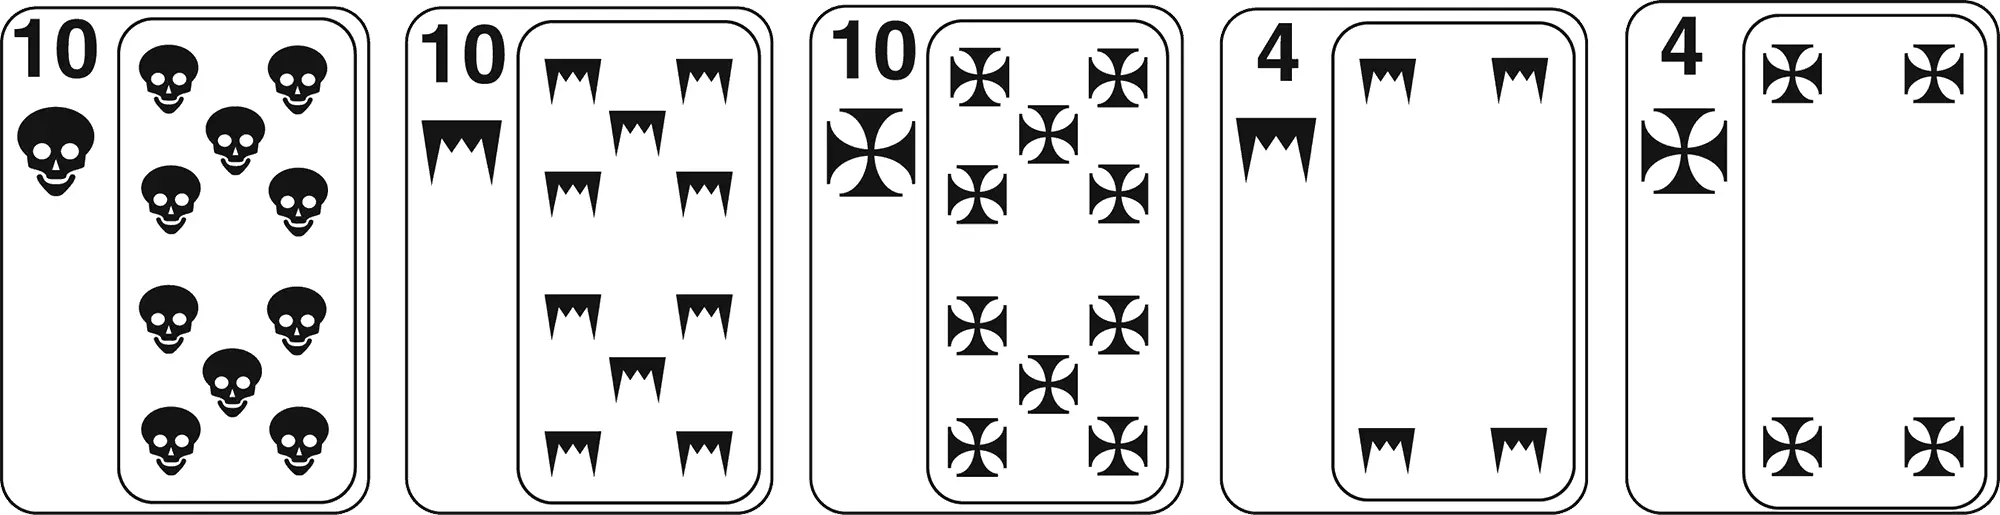 Укладкой называется комбинация из трех карт одного достоинства и пары - фото 7